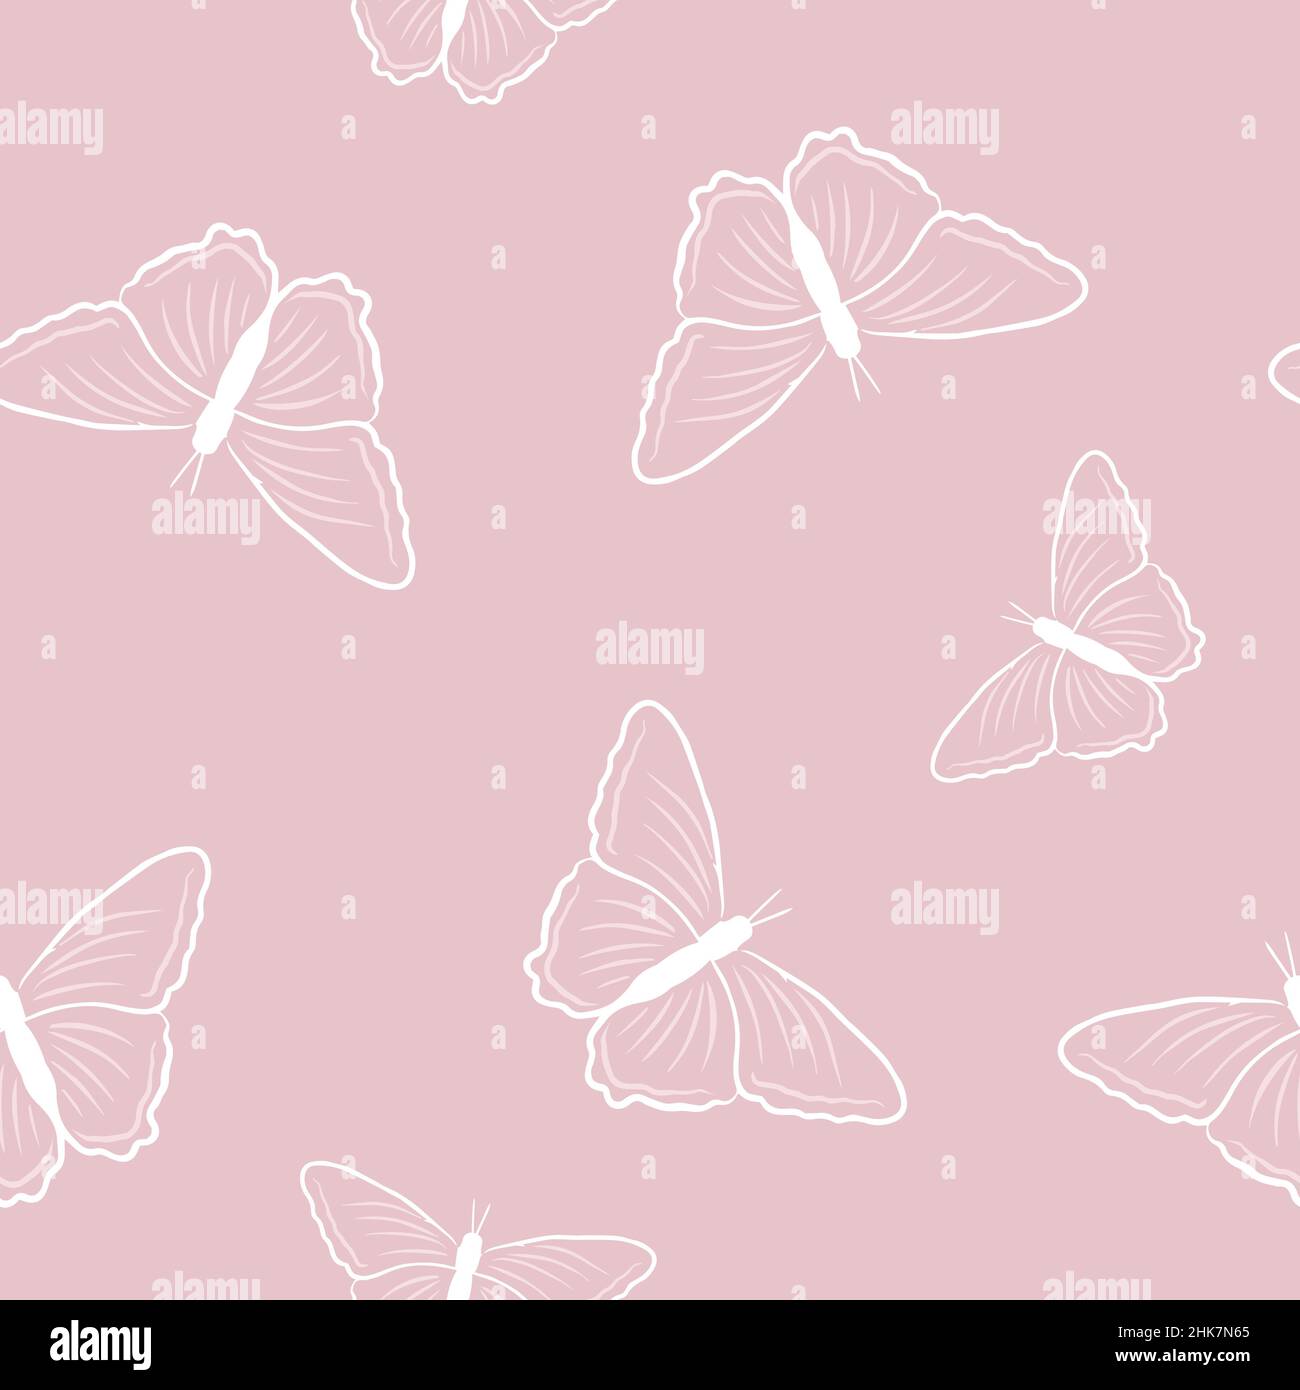 Modello a farfalla senza cuciture in stile doodles su sfondo rosa. Illustrazione vettoriale delle farfalle per il vostro disegno. Illustrazione Vettoriale